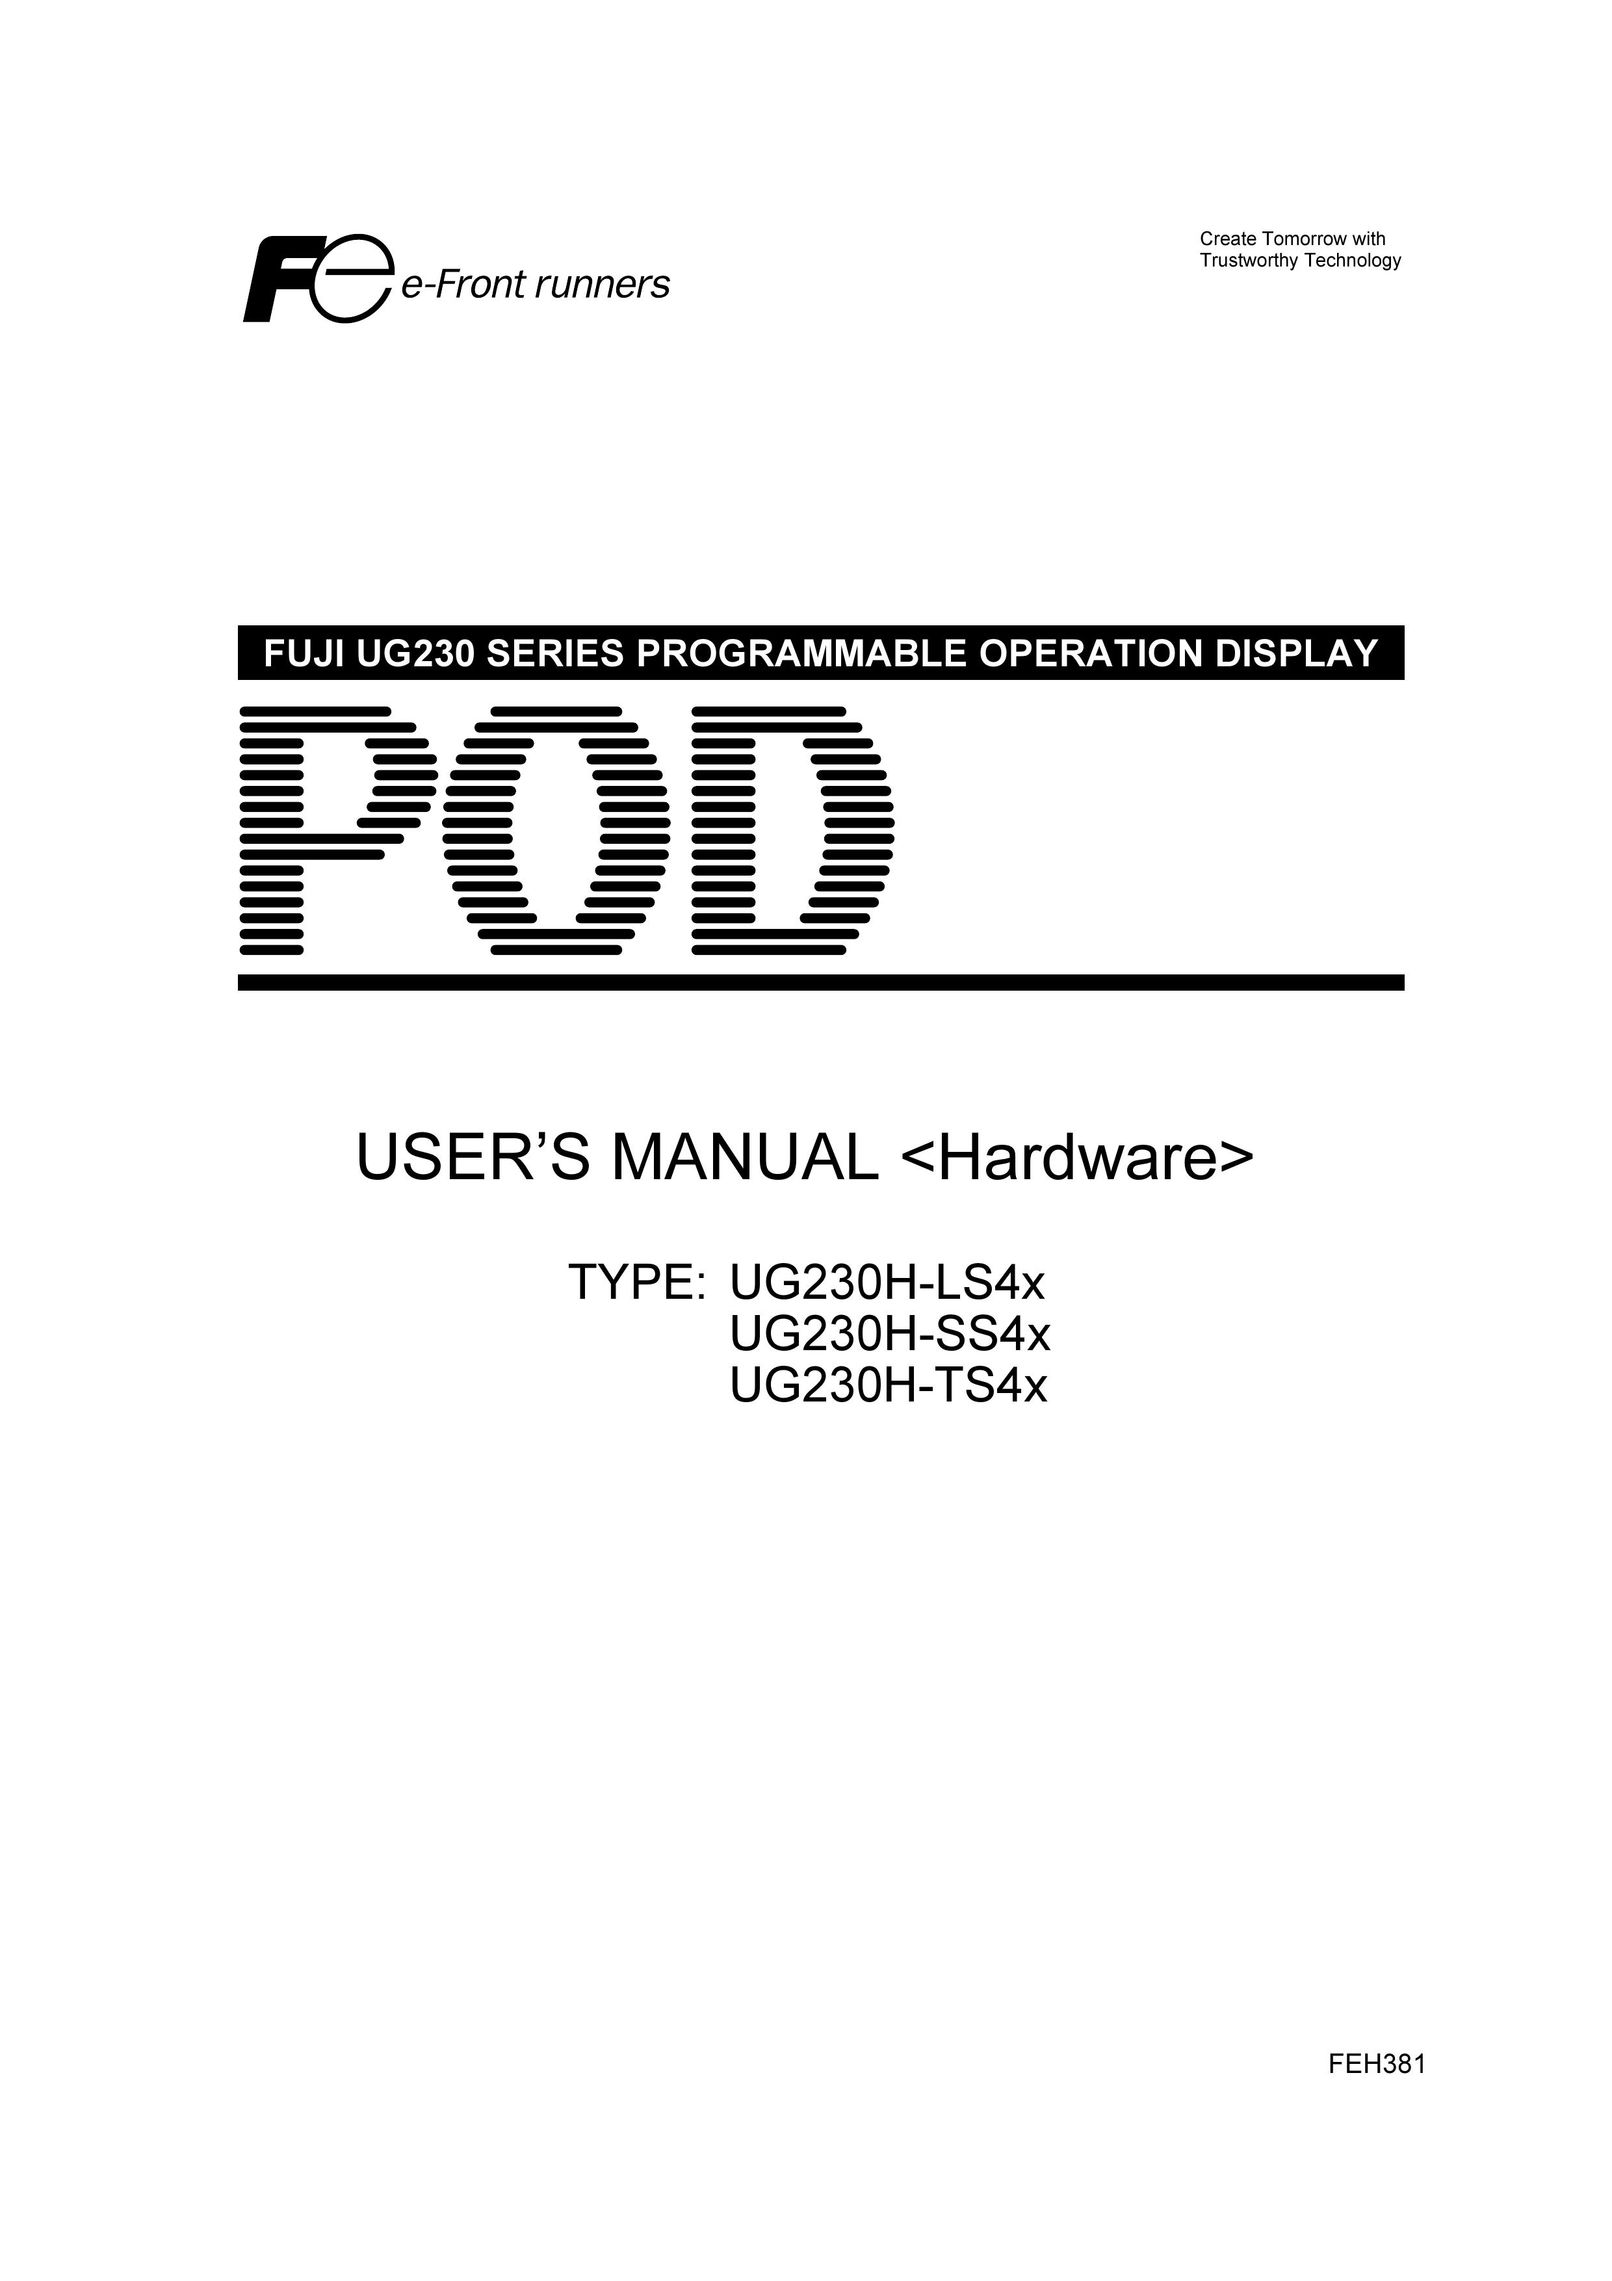 Fuji Bikes UG230H-TS4x Network Card User Manual